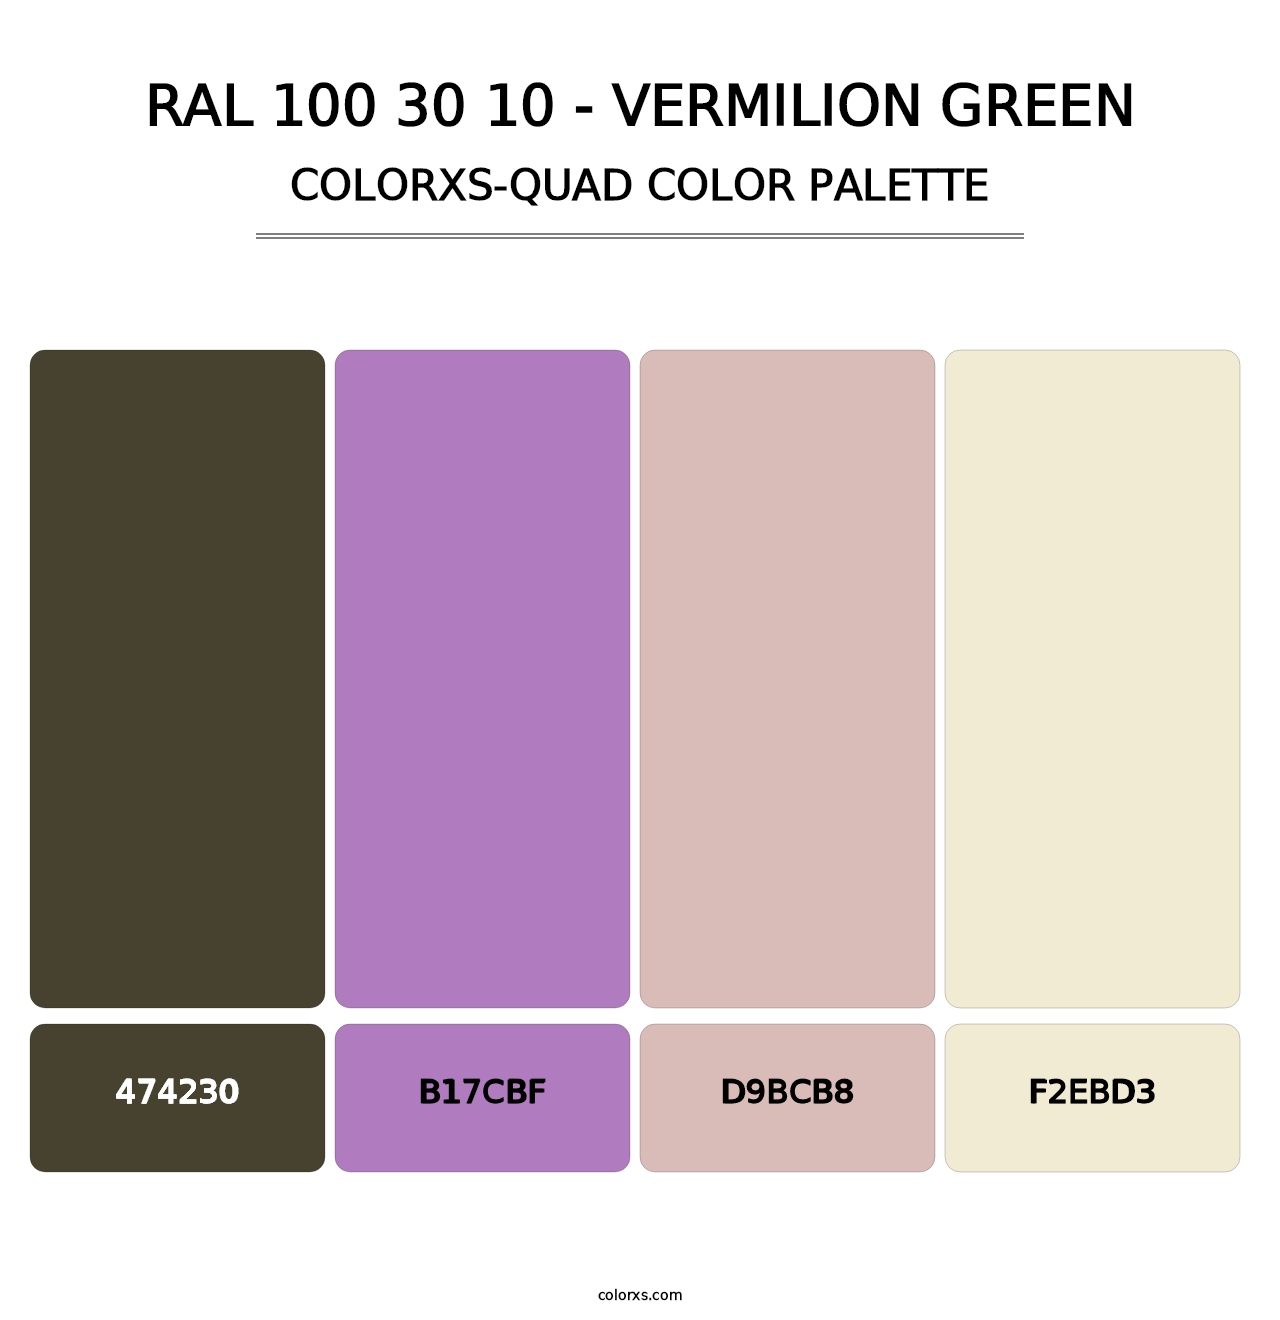 RAL 100 30 10 - Vermilion Green - Colorxs Quad Palette